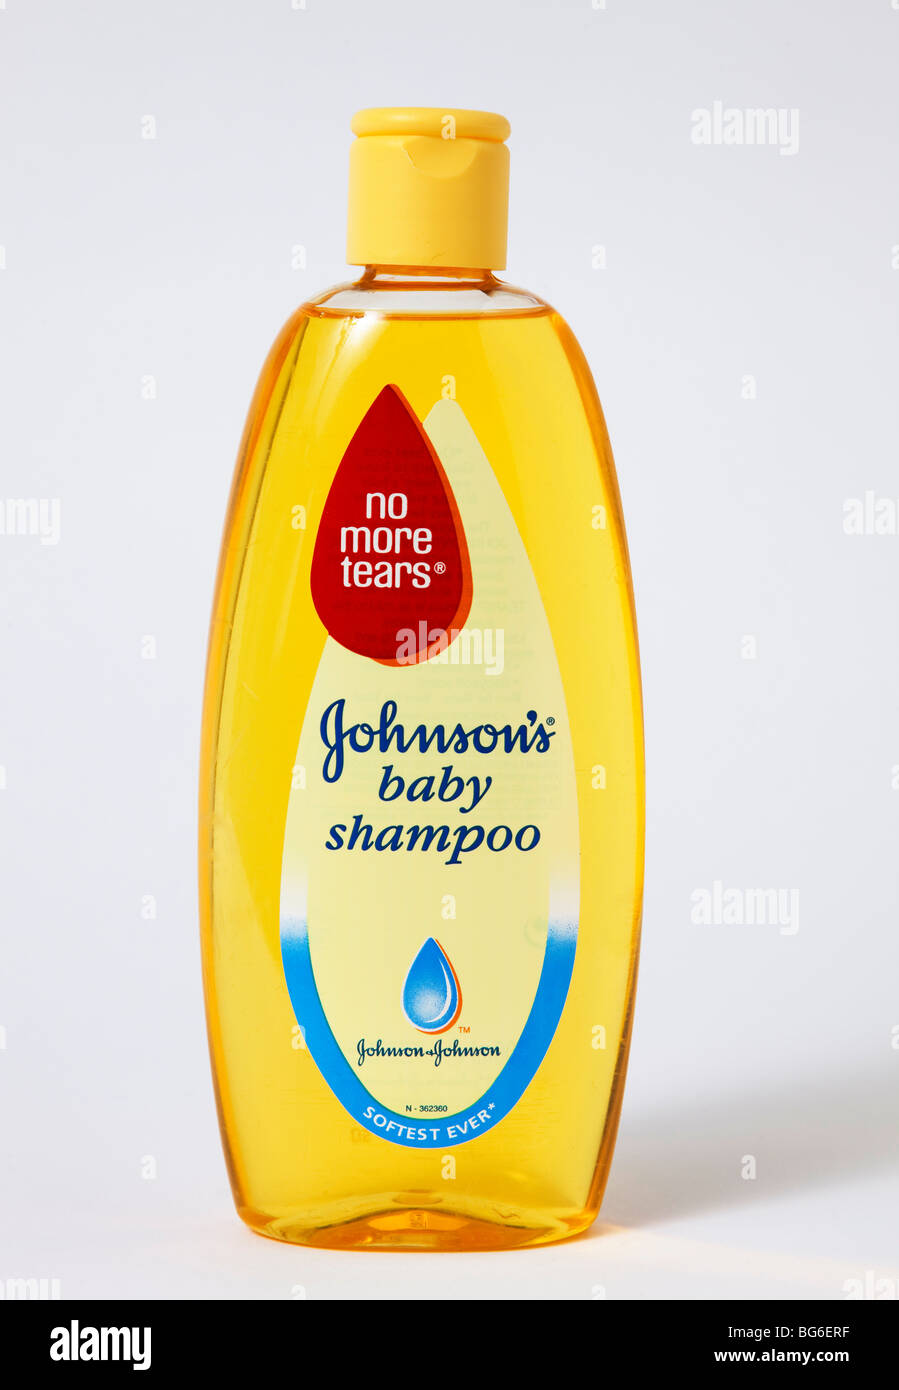 no tears shampoo